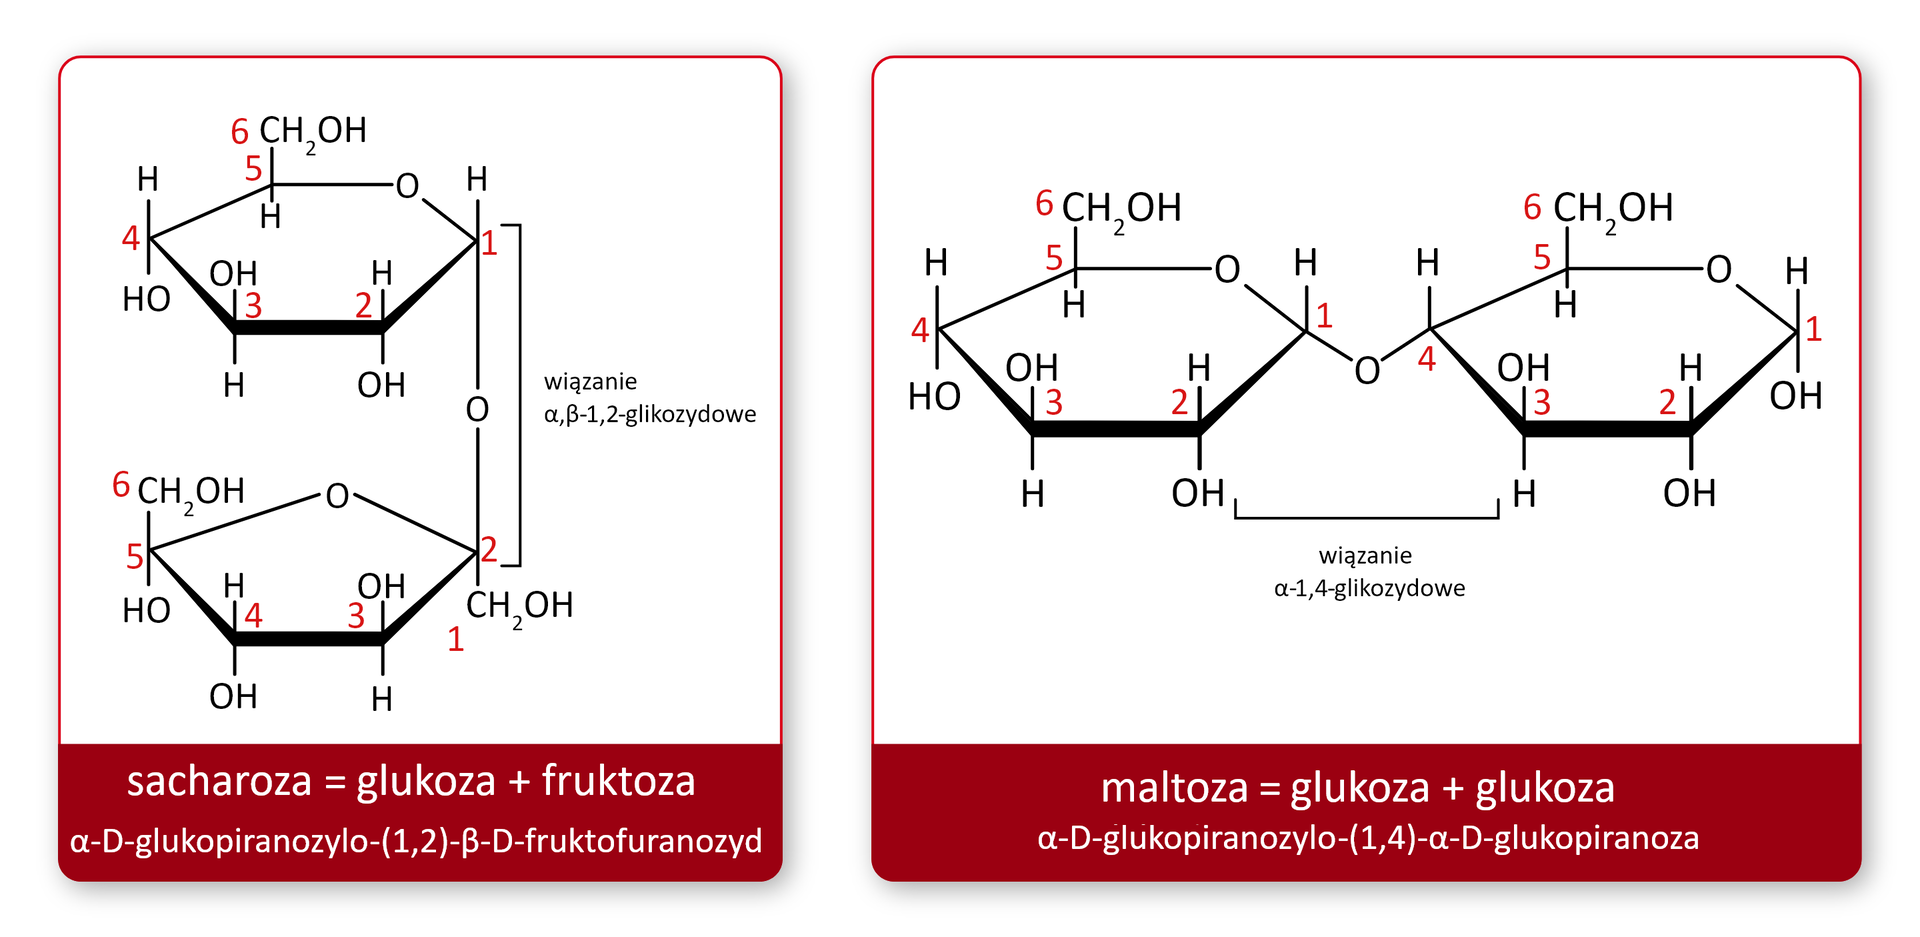 Ilustracja przedstawia przykładowe disacharydy (sacharozę i maltozę). Sacharoza = glukoza + fruktoza, alfa‑D-glukopiranozylo(1,2)-beta‑D-fruktofuranozyd. Wzór: sześcioczłonowy pierścień połączony na dole z pięcioczłonowym pierścieniem. Wiązanie alfa‑beta‑1,2‑glikozydowe łączy te dwa pierścienie. Wiązanie łączy pierwszy atom węgla sześcioczłonowego pierścienia z drugim atomem węgla w pięcioczłonowym pierścieniu. Pomiędzy atomami węgla jest atom tlenu. Drugi wzór: maltoza = glukoza + glukoza, alfa‑D-glukopiranozylo(1,4)-alfa‑D-glukopiranoza. We wzorze wiązanie alfa‑1,4‑glikozydowe występuje pomiędzy dwoma sześcioczłonowymi pierścieniami. Łączy pierwszy atom węgla z pierwszego pierścienia, po lewej stronie wzoru, z czwartym atomem węgla drugiego pierścienia.     